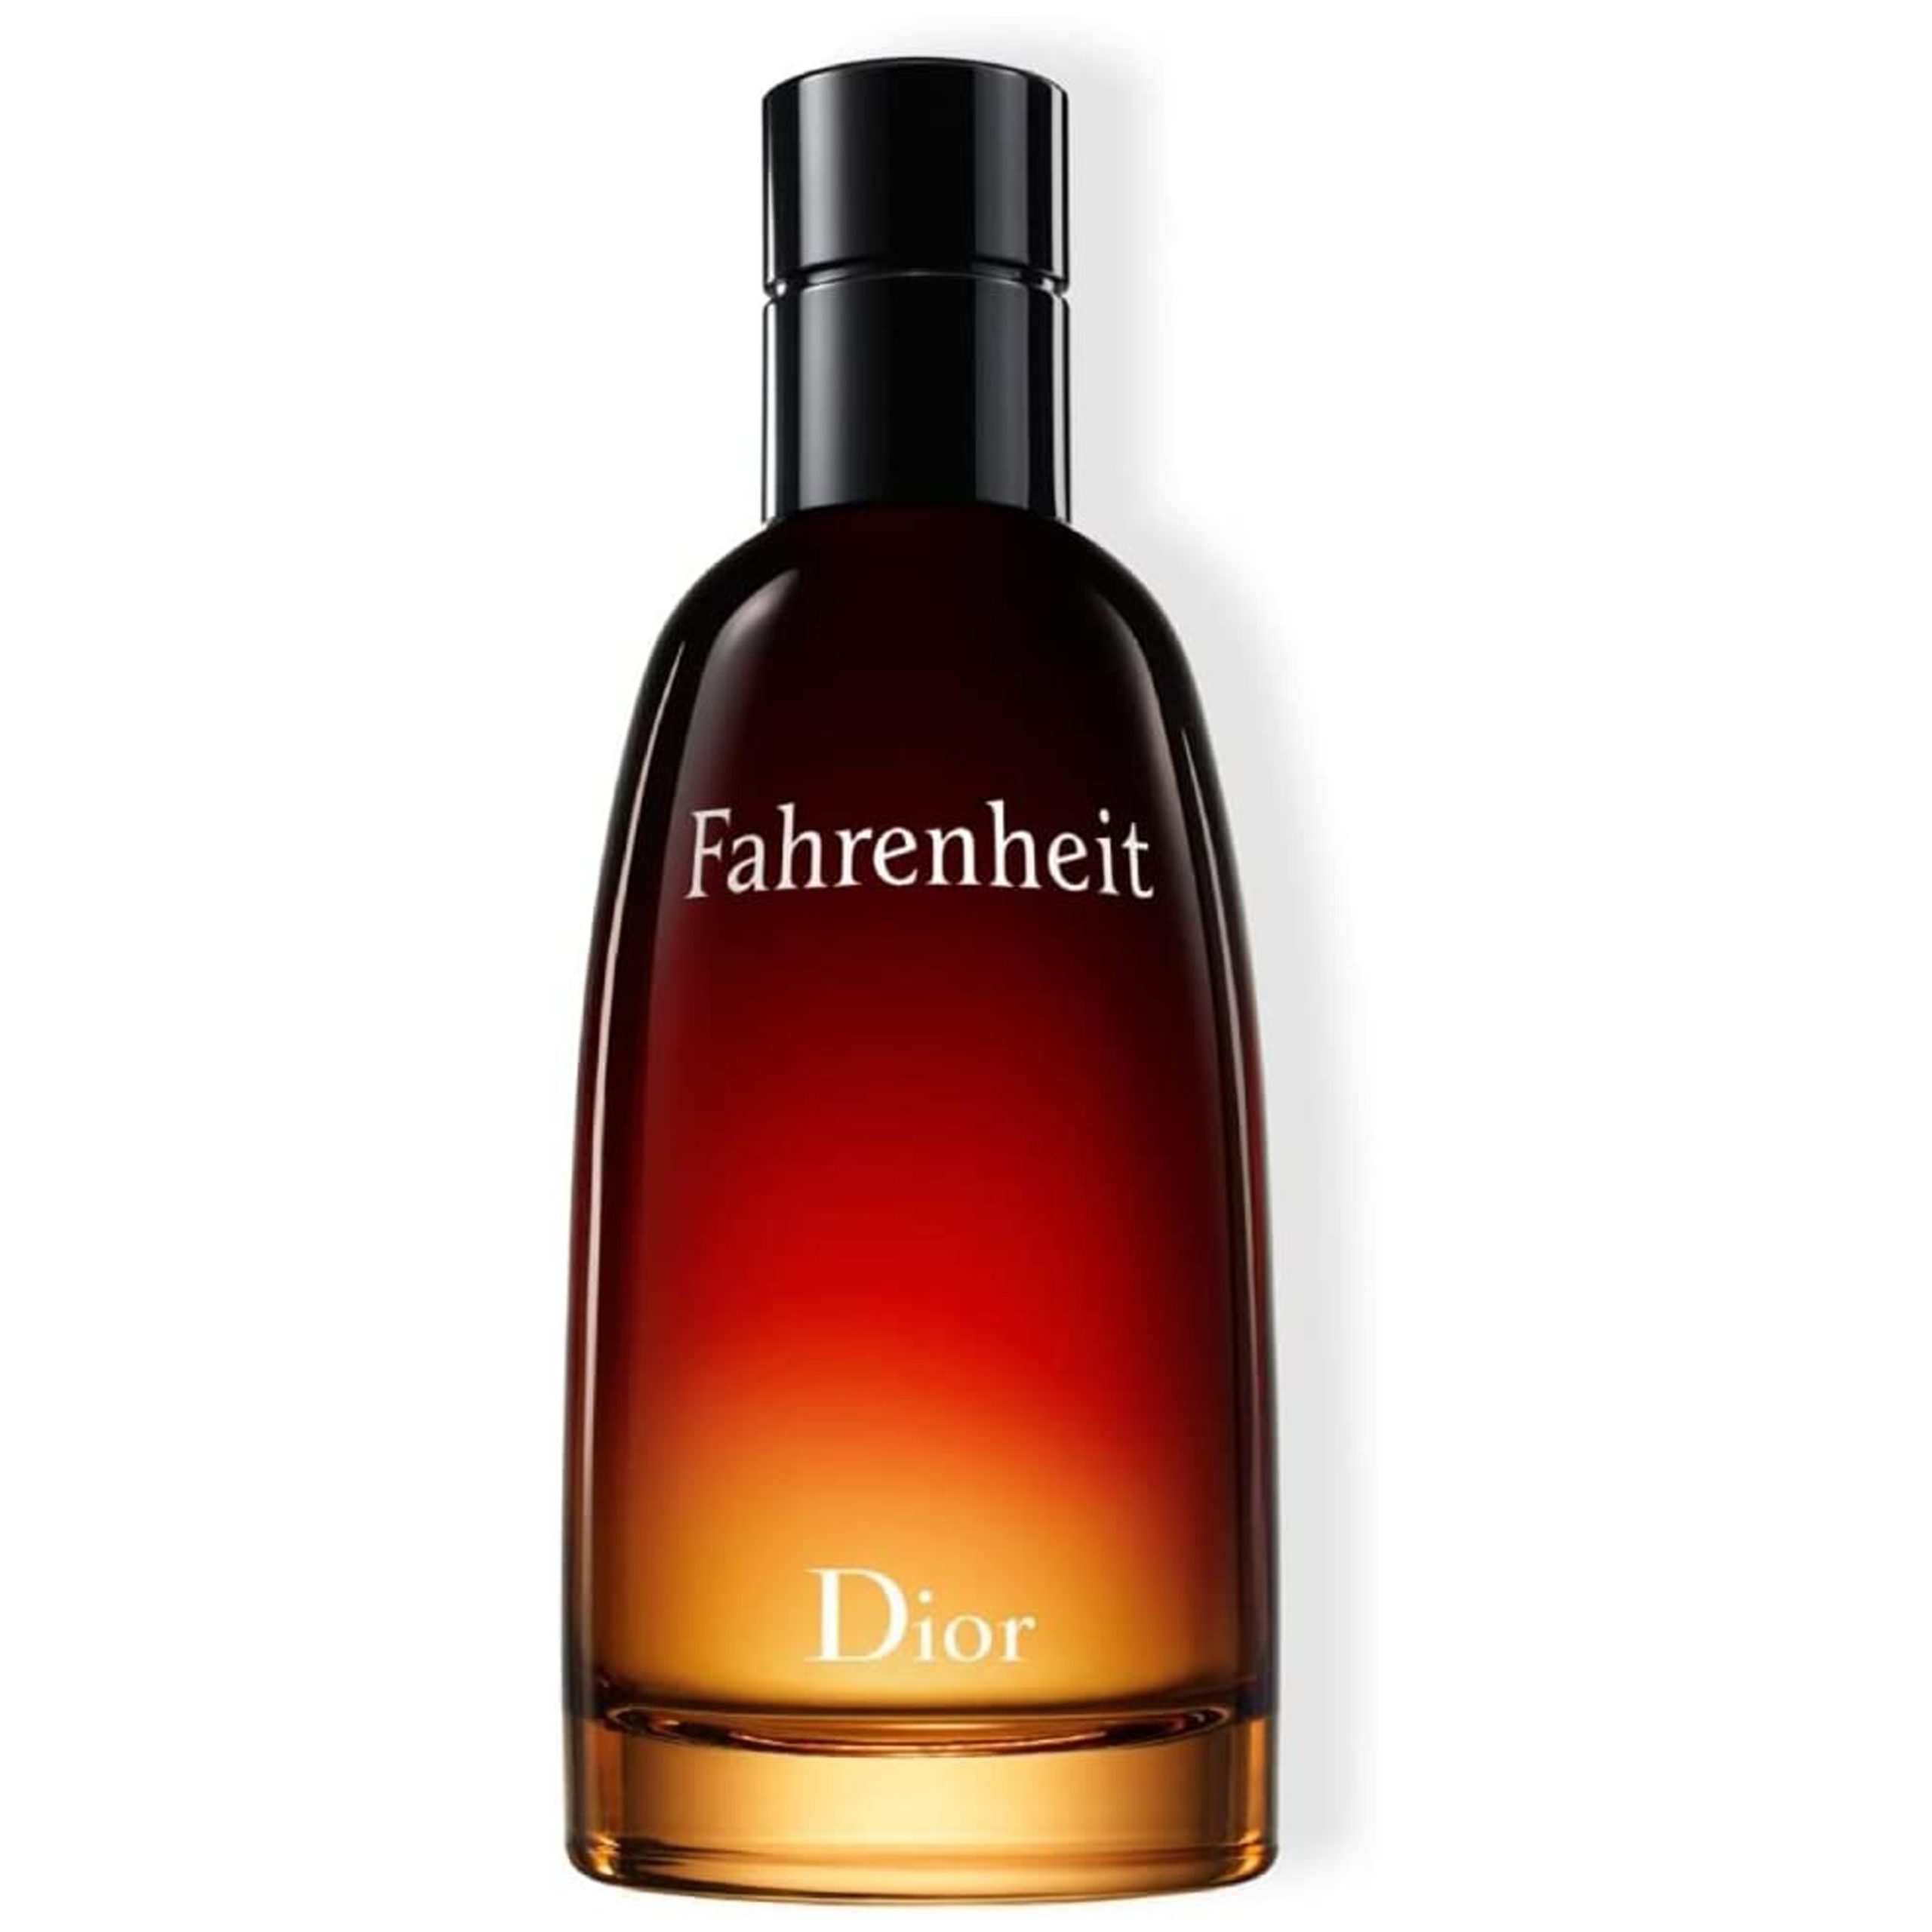 ادکلن مردانه دیور فارنهایت Dior Perfume – Christian Dior Fahrenheit